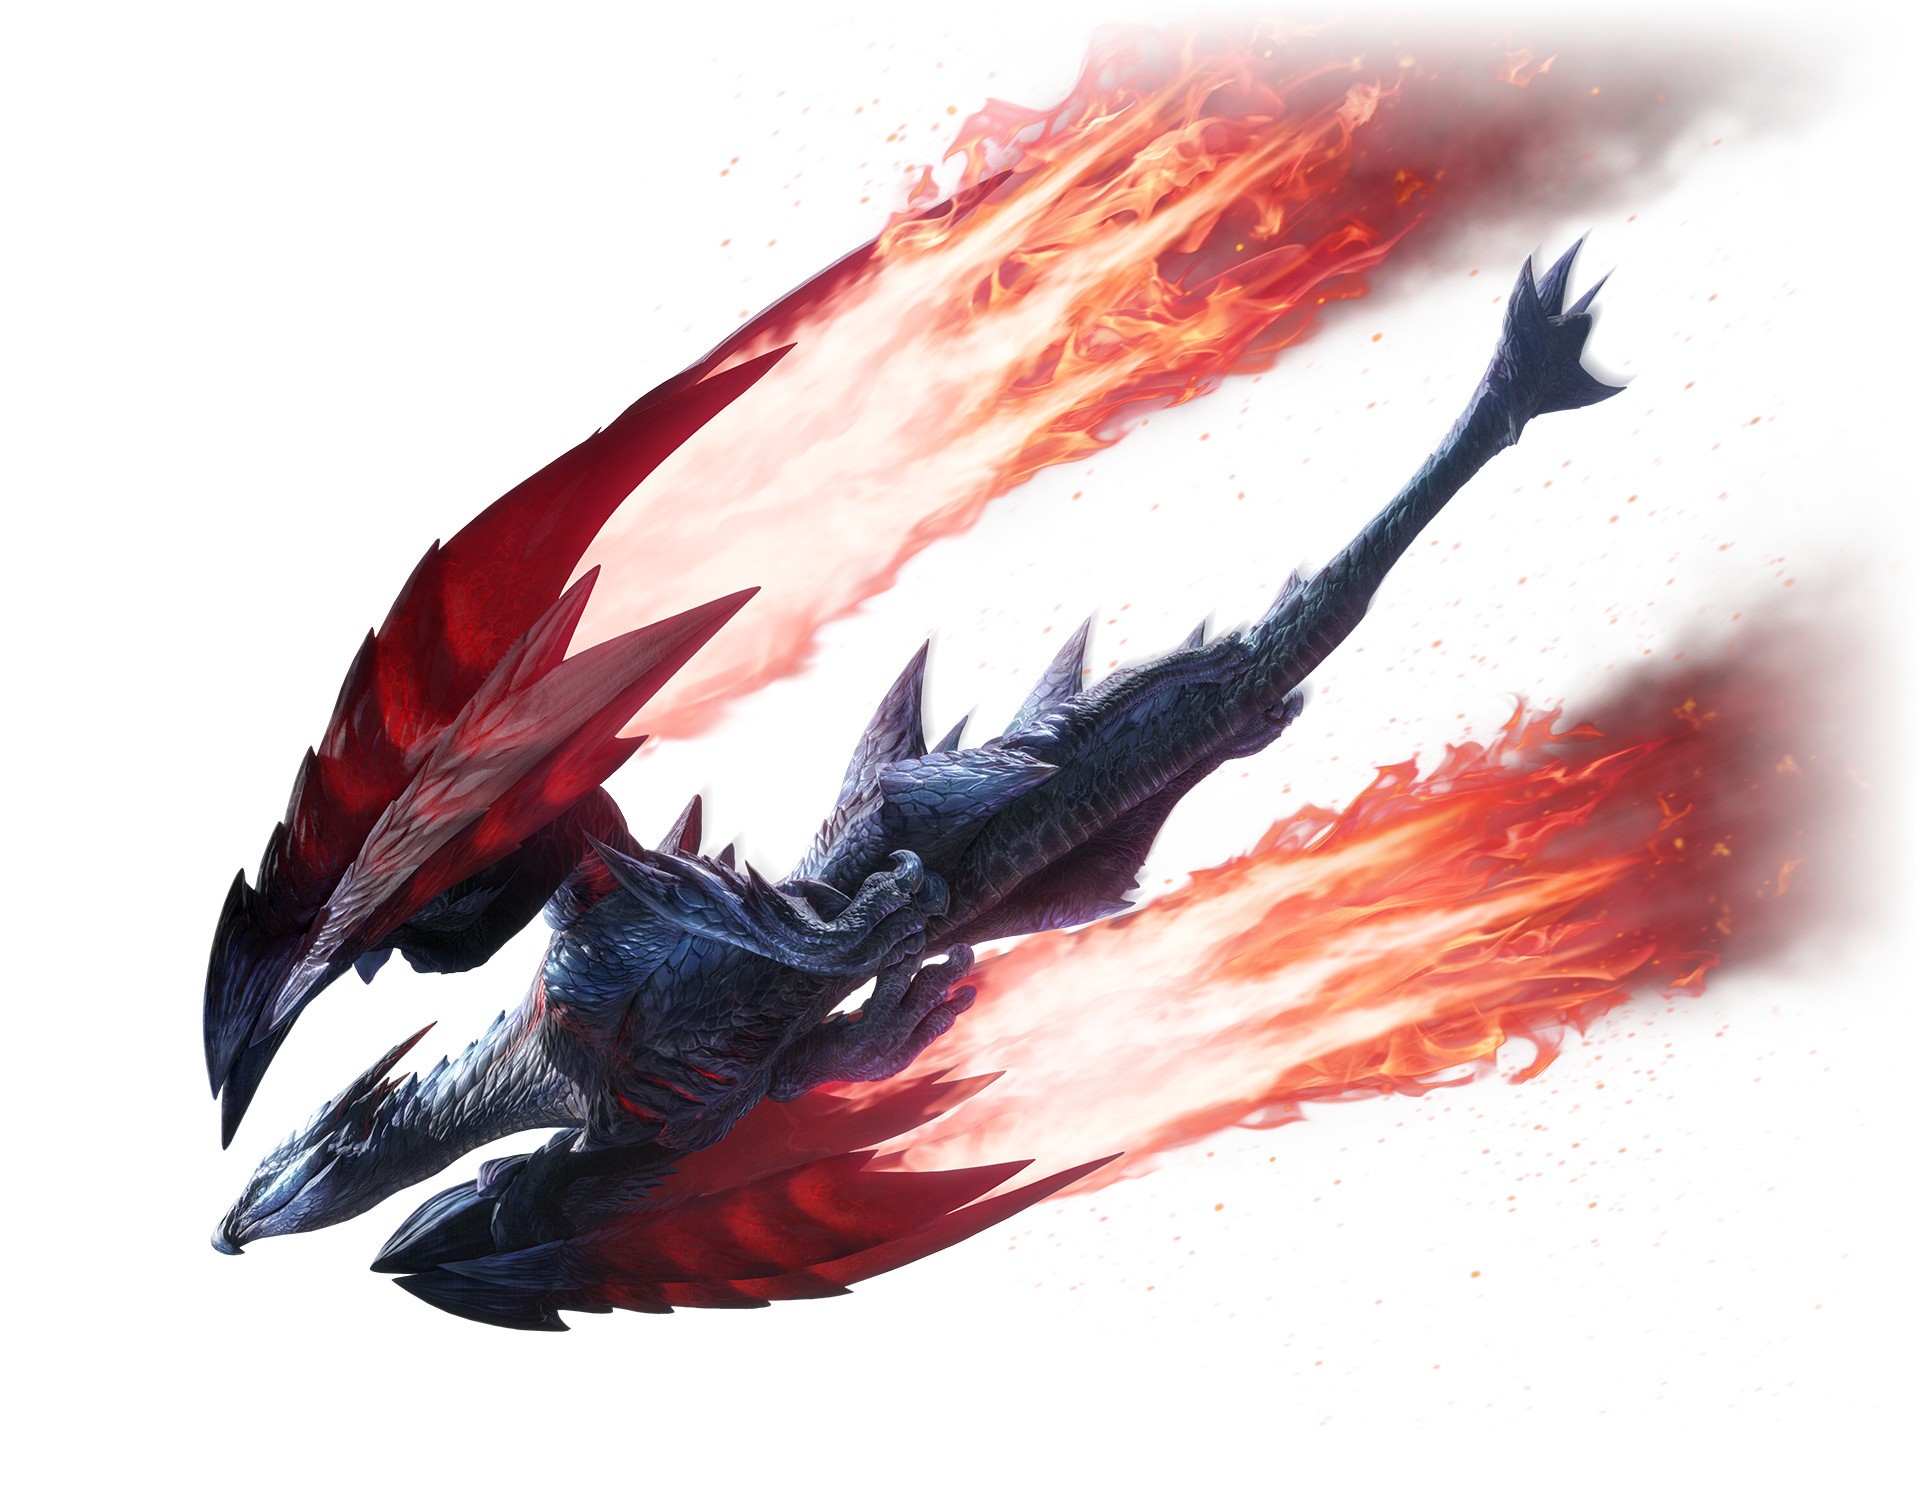 《魔物猎人 崛起》Ver.3.0 更新 27 日释出 “秘红赫耀的天彗龙”破空现身！